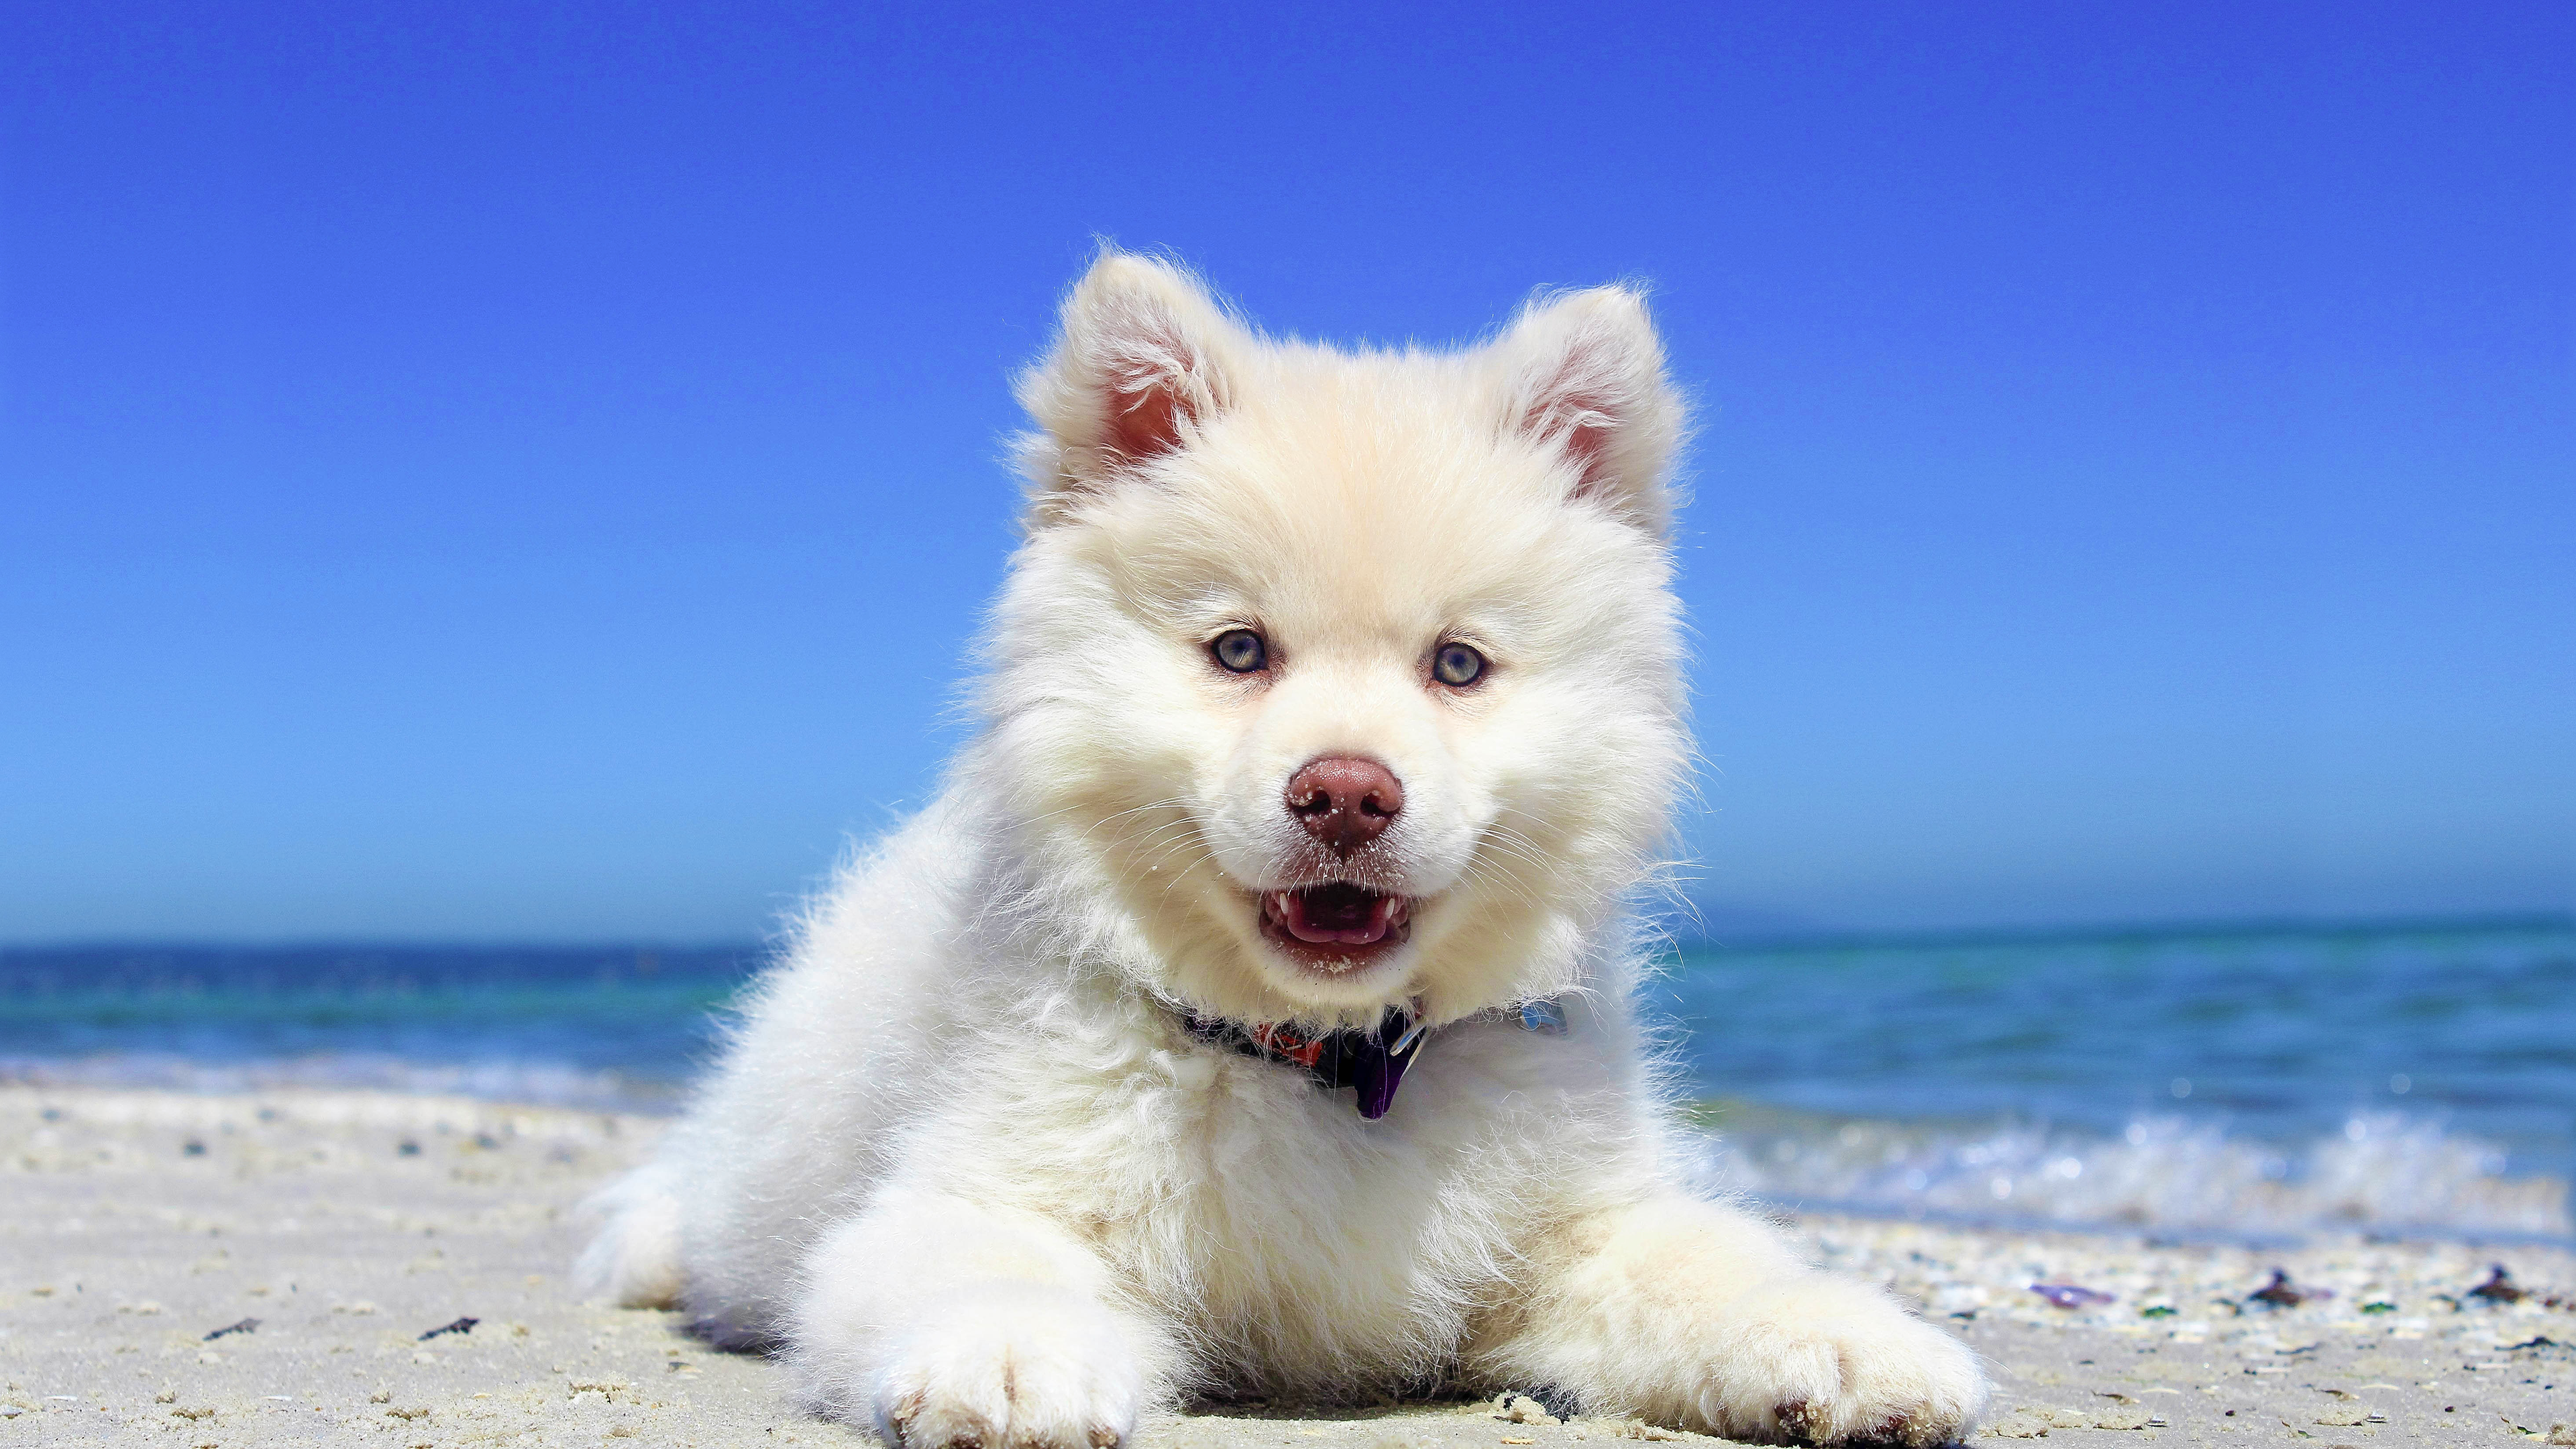 Beach Puppy Dog Desktop Wallpaper .wallpapertip.com